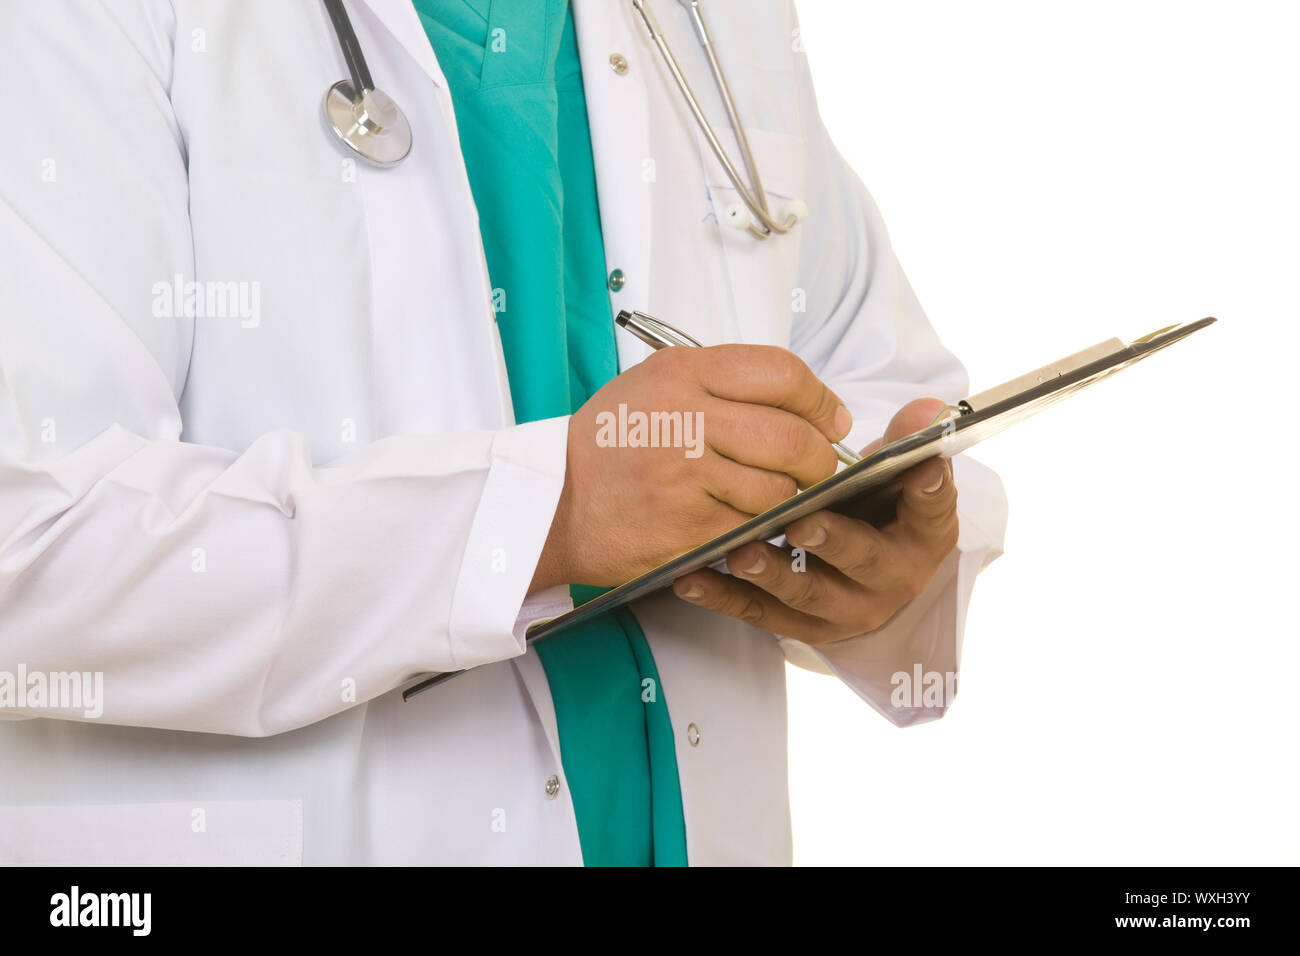 Immagine di un operatore sanitario che indossano uniformi tenendo un clipboard con obbligo di ricetta Foto Stock